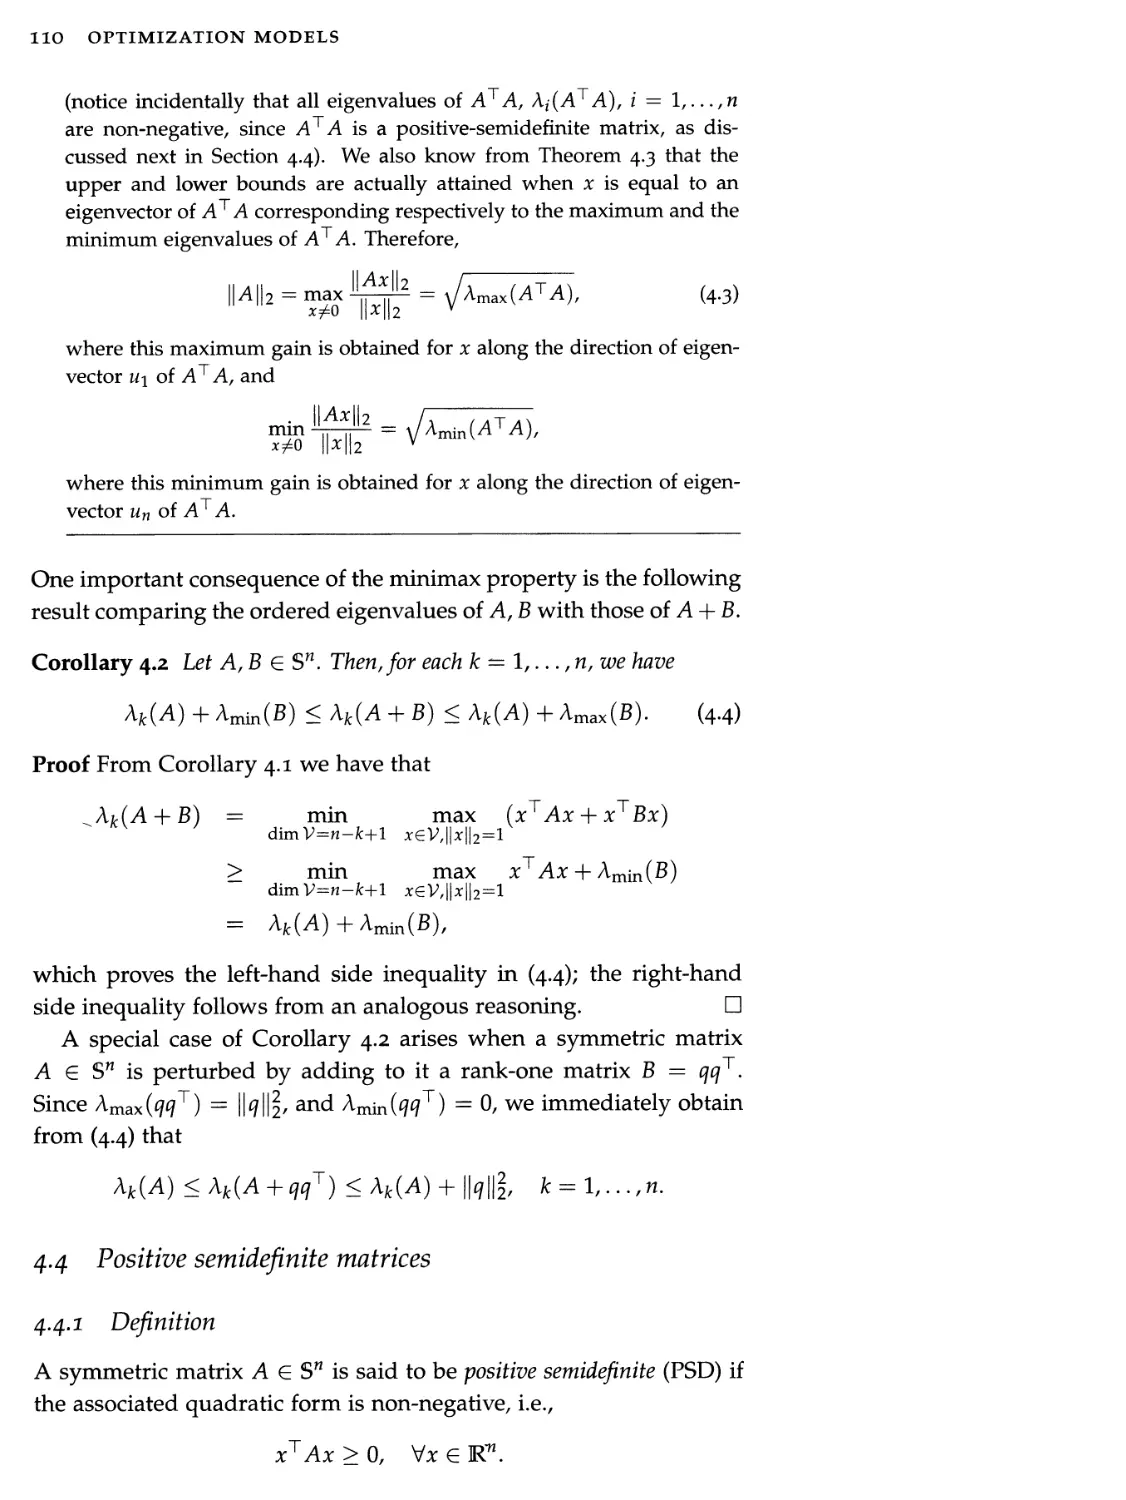 4.4 Positive semidefinite matrices 110